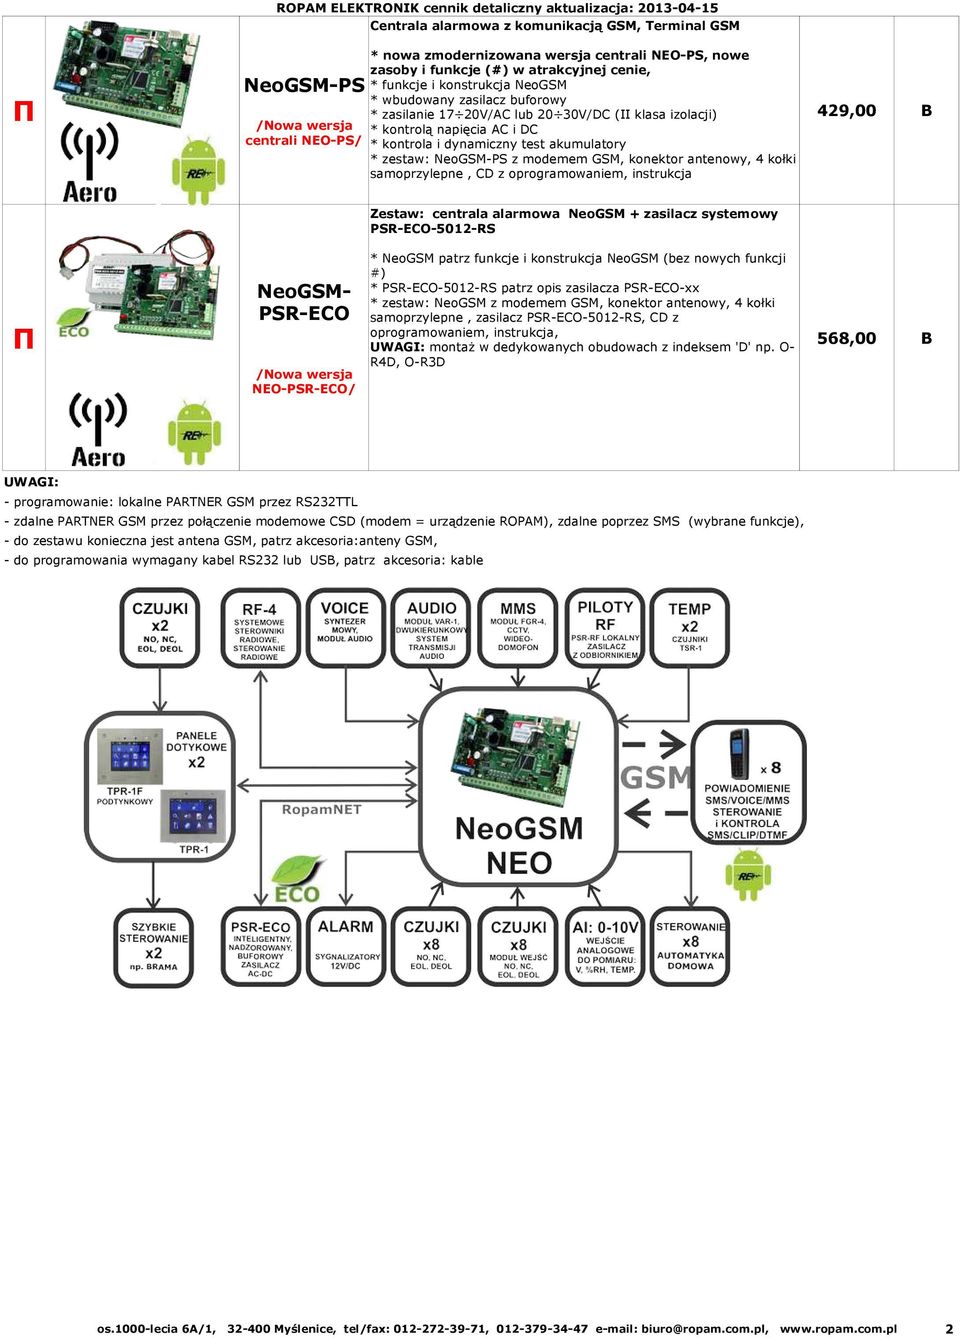 DC * kontrola i dynamiczny test akumulatory * zestaw: NeoGSM-PS z modemem GSM, konektor antenowy, 4 kołki samoprzylepne, CD z oprogramowaniem, instrukcja NeoGSM- PSR-ECO Π oprogramowaniem,